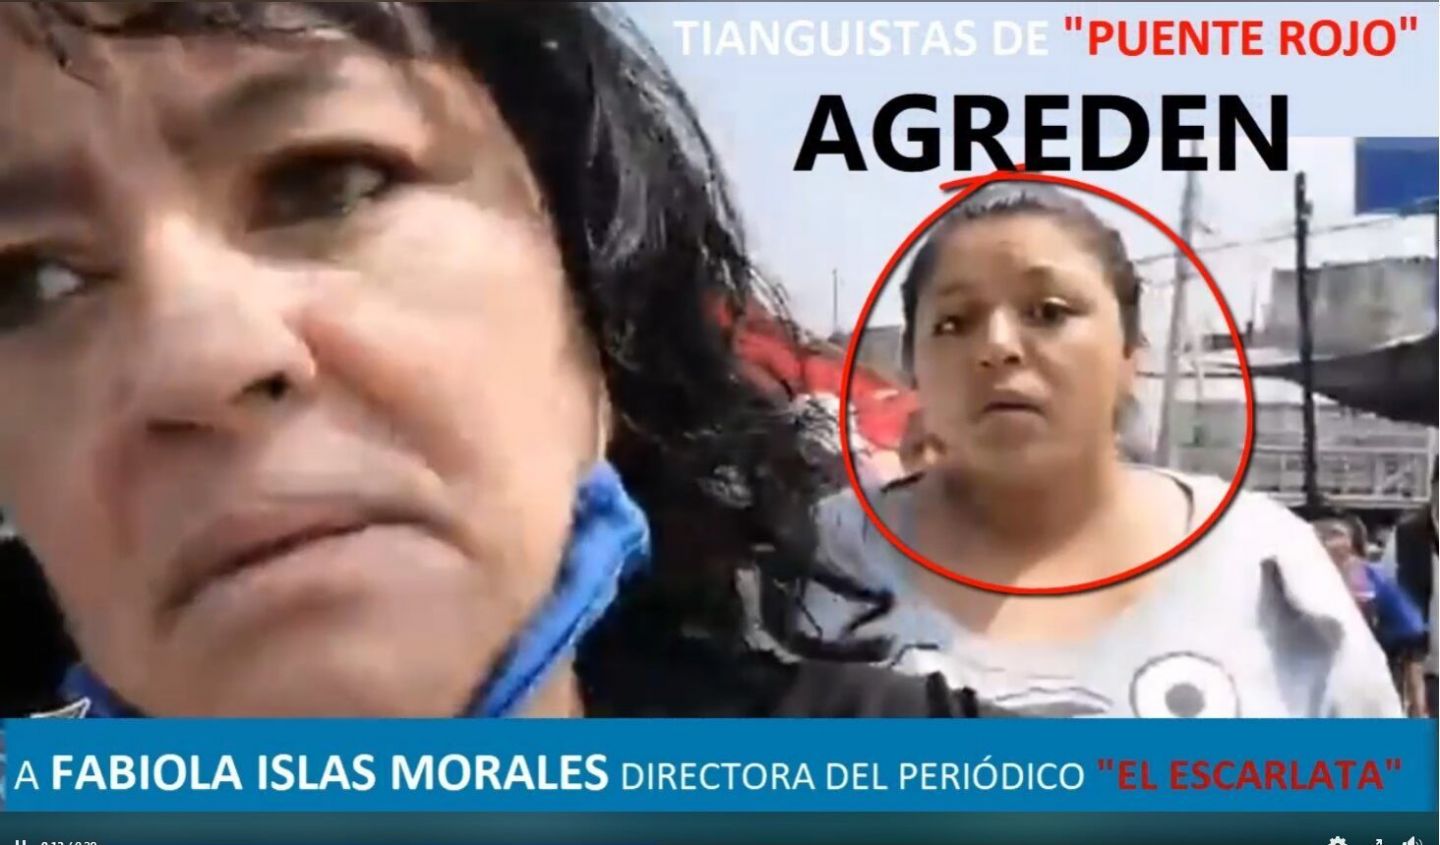 Integrantes de Tianguistas de Puente Rojo realizan actos de intimidación a Fabiola Islas Morales directora del periódico El Escarlata